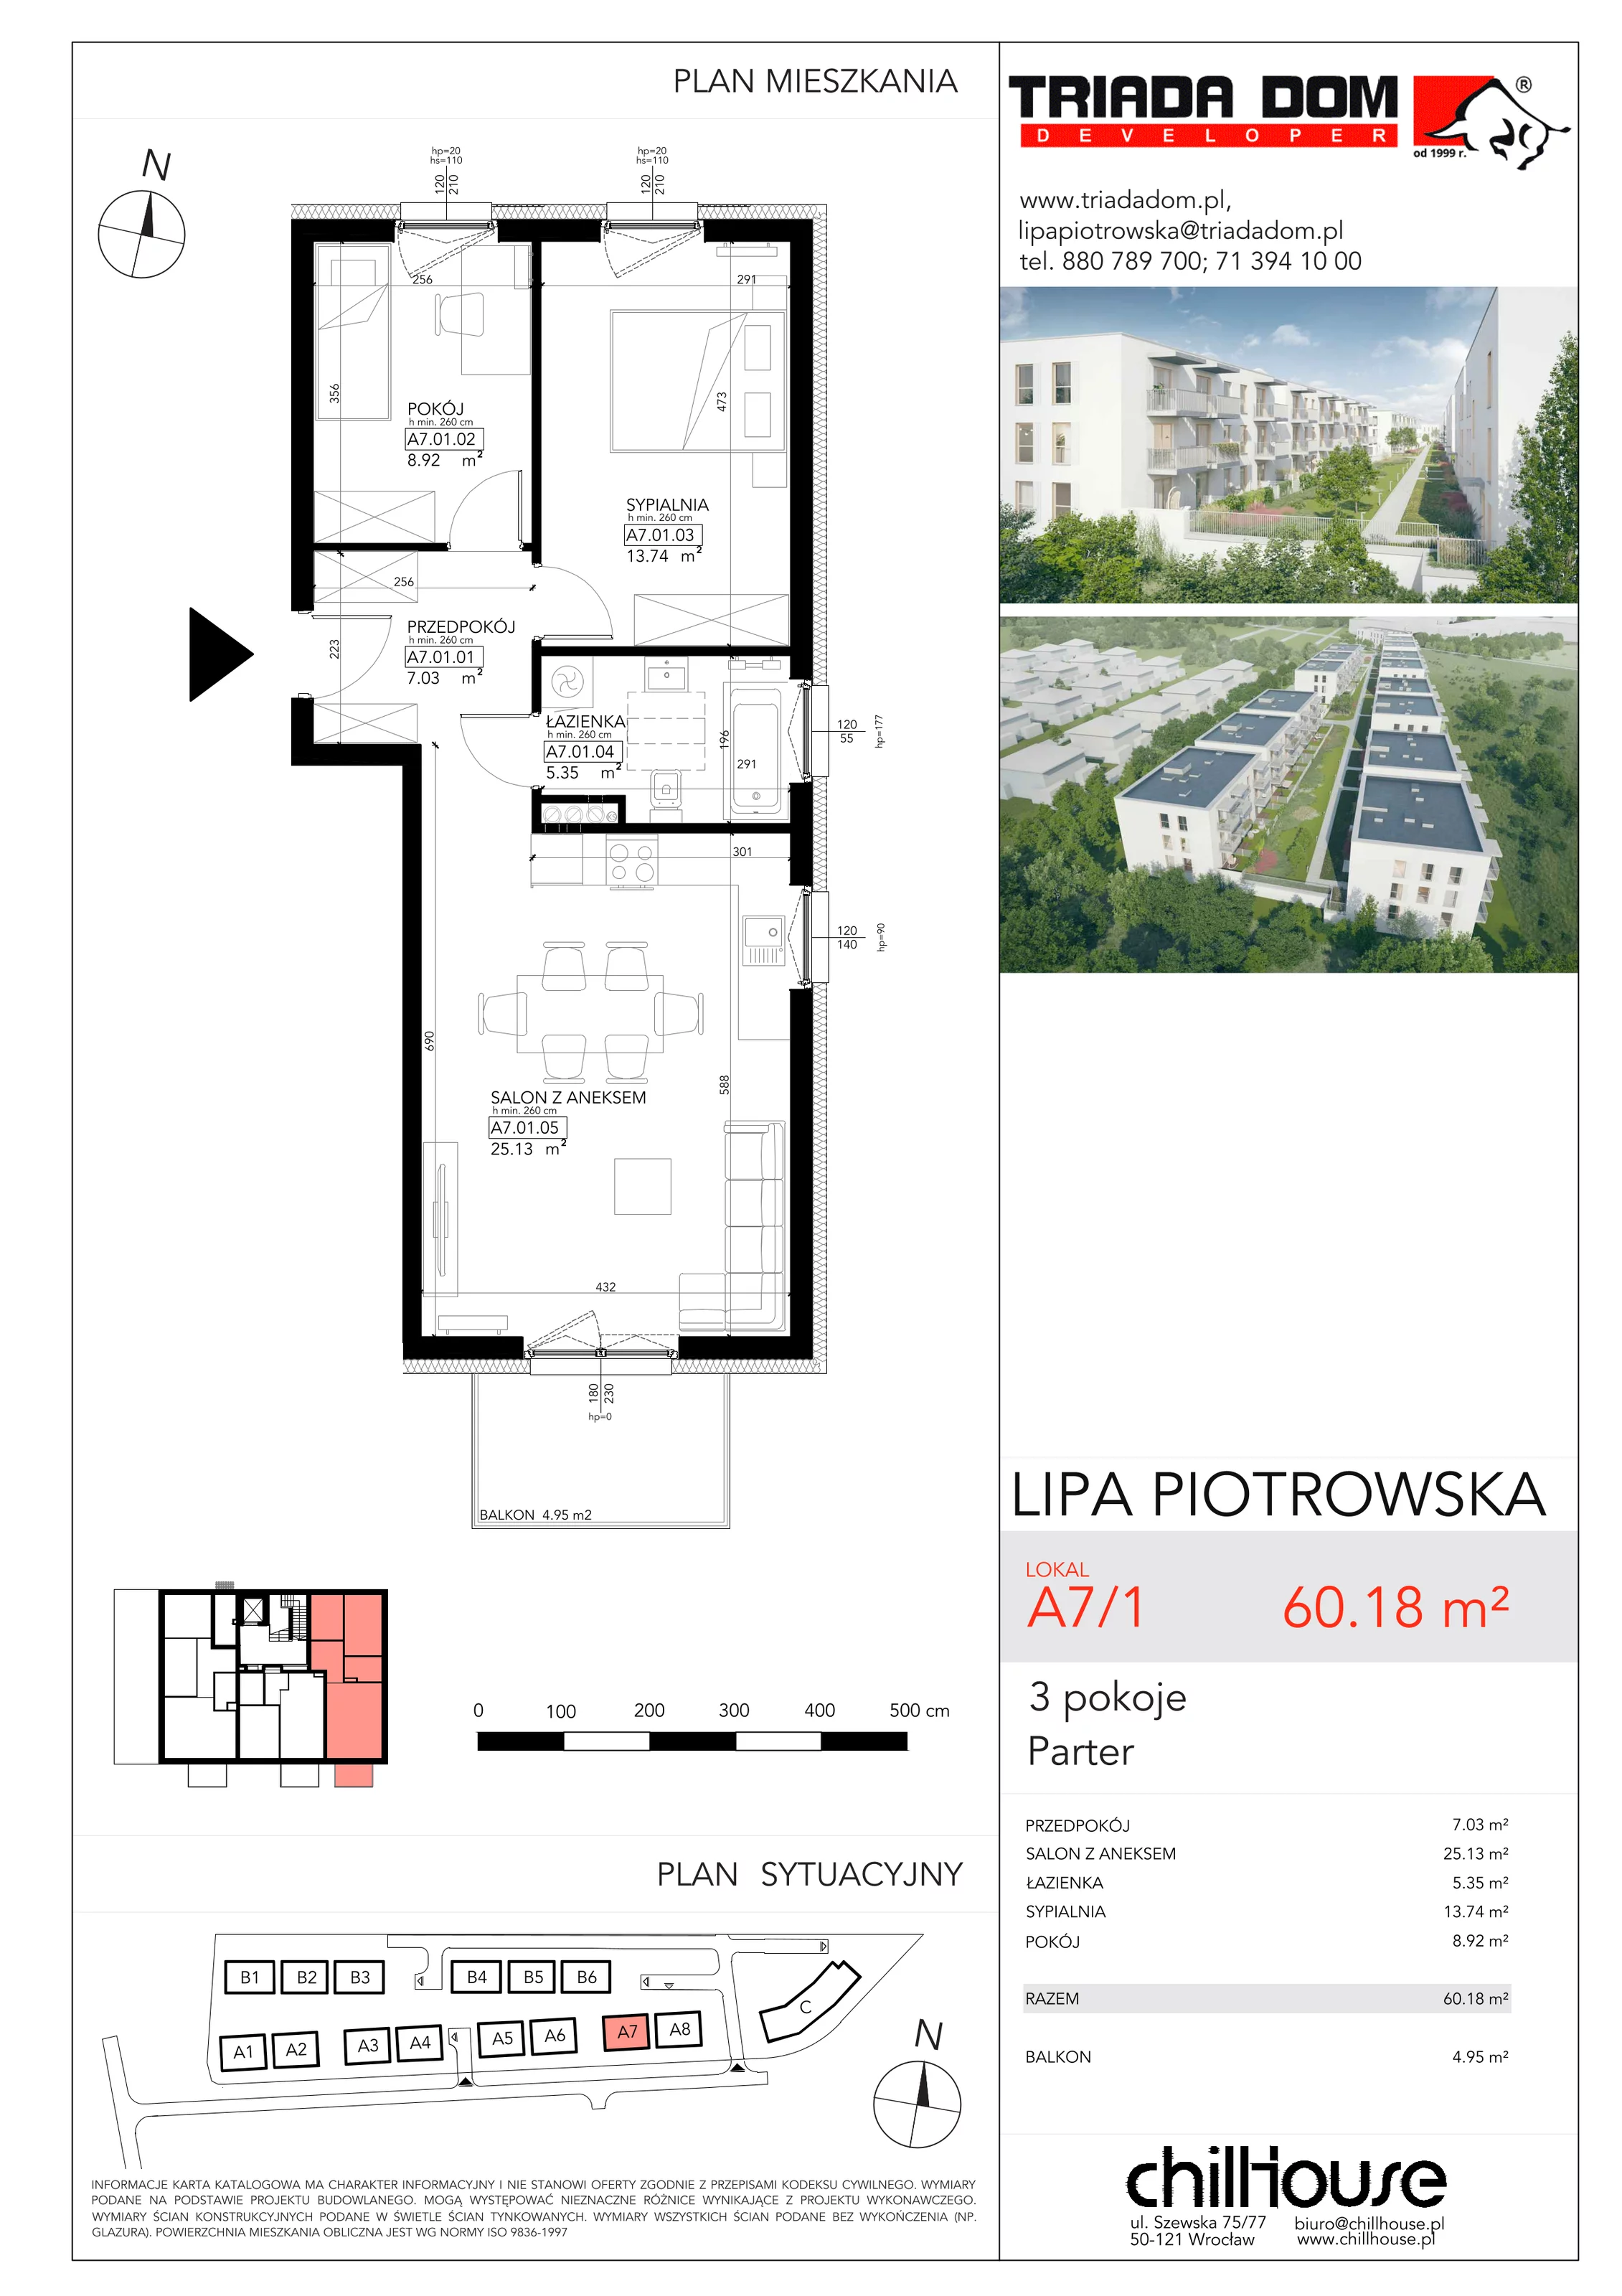 Mieszkanie 60,18 m², parter, oferta nr A71, Lipa Piotrowska, Wrocław, Lipa Piotrowska, ul. Lawendowa / Melisowa